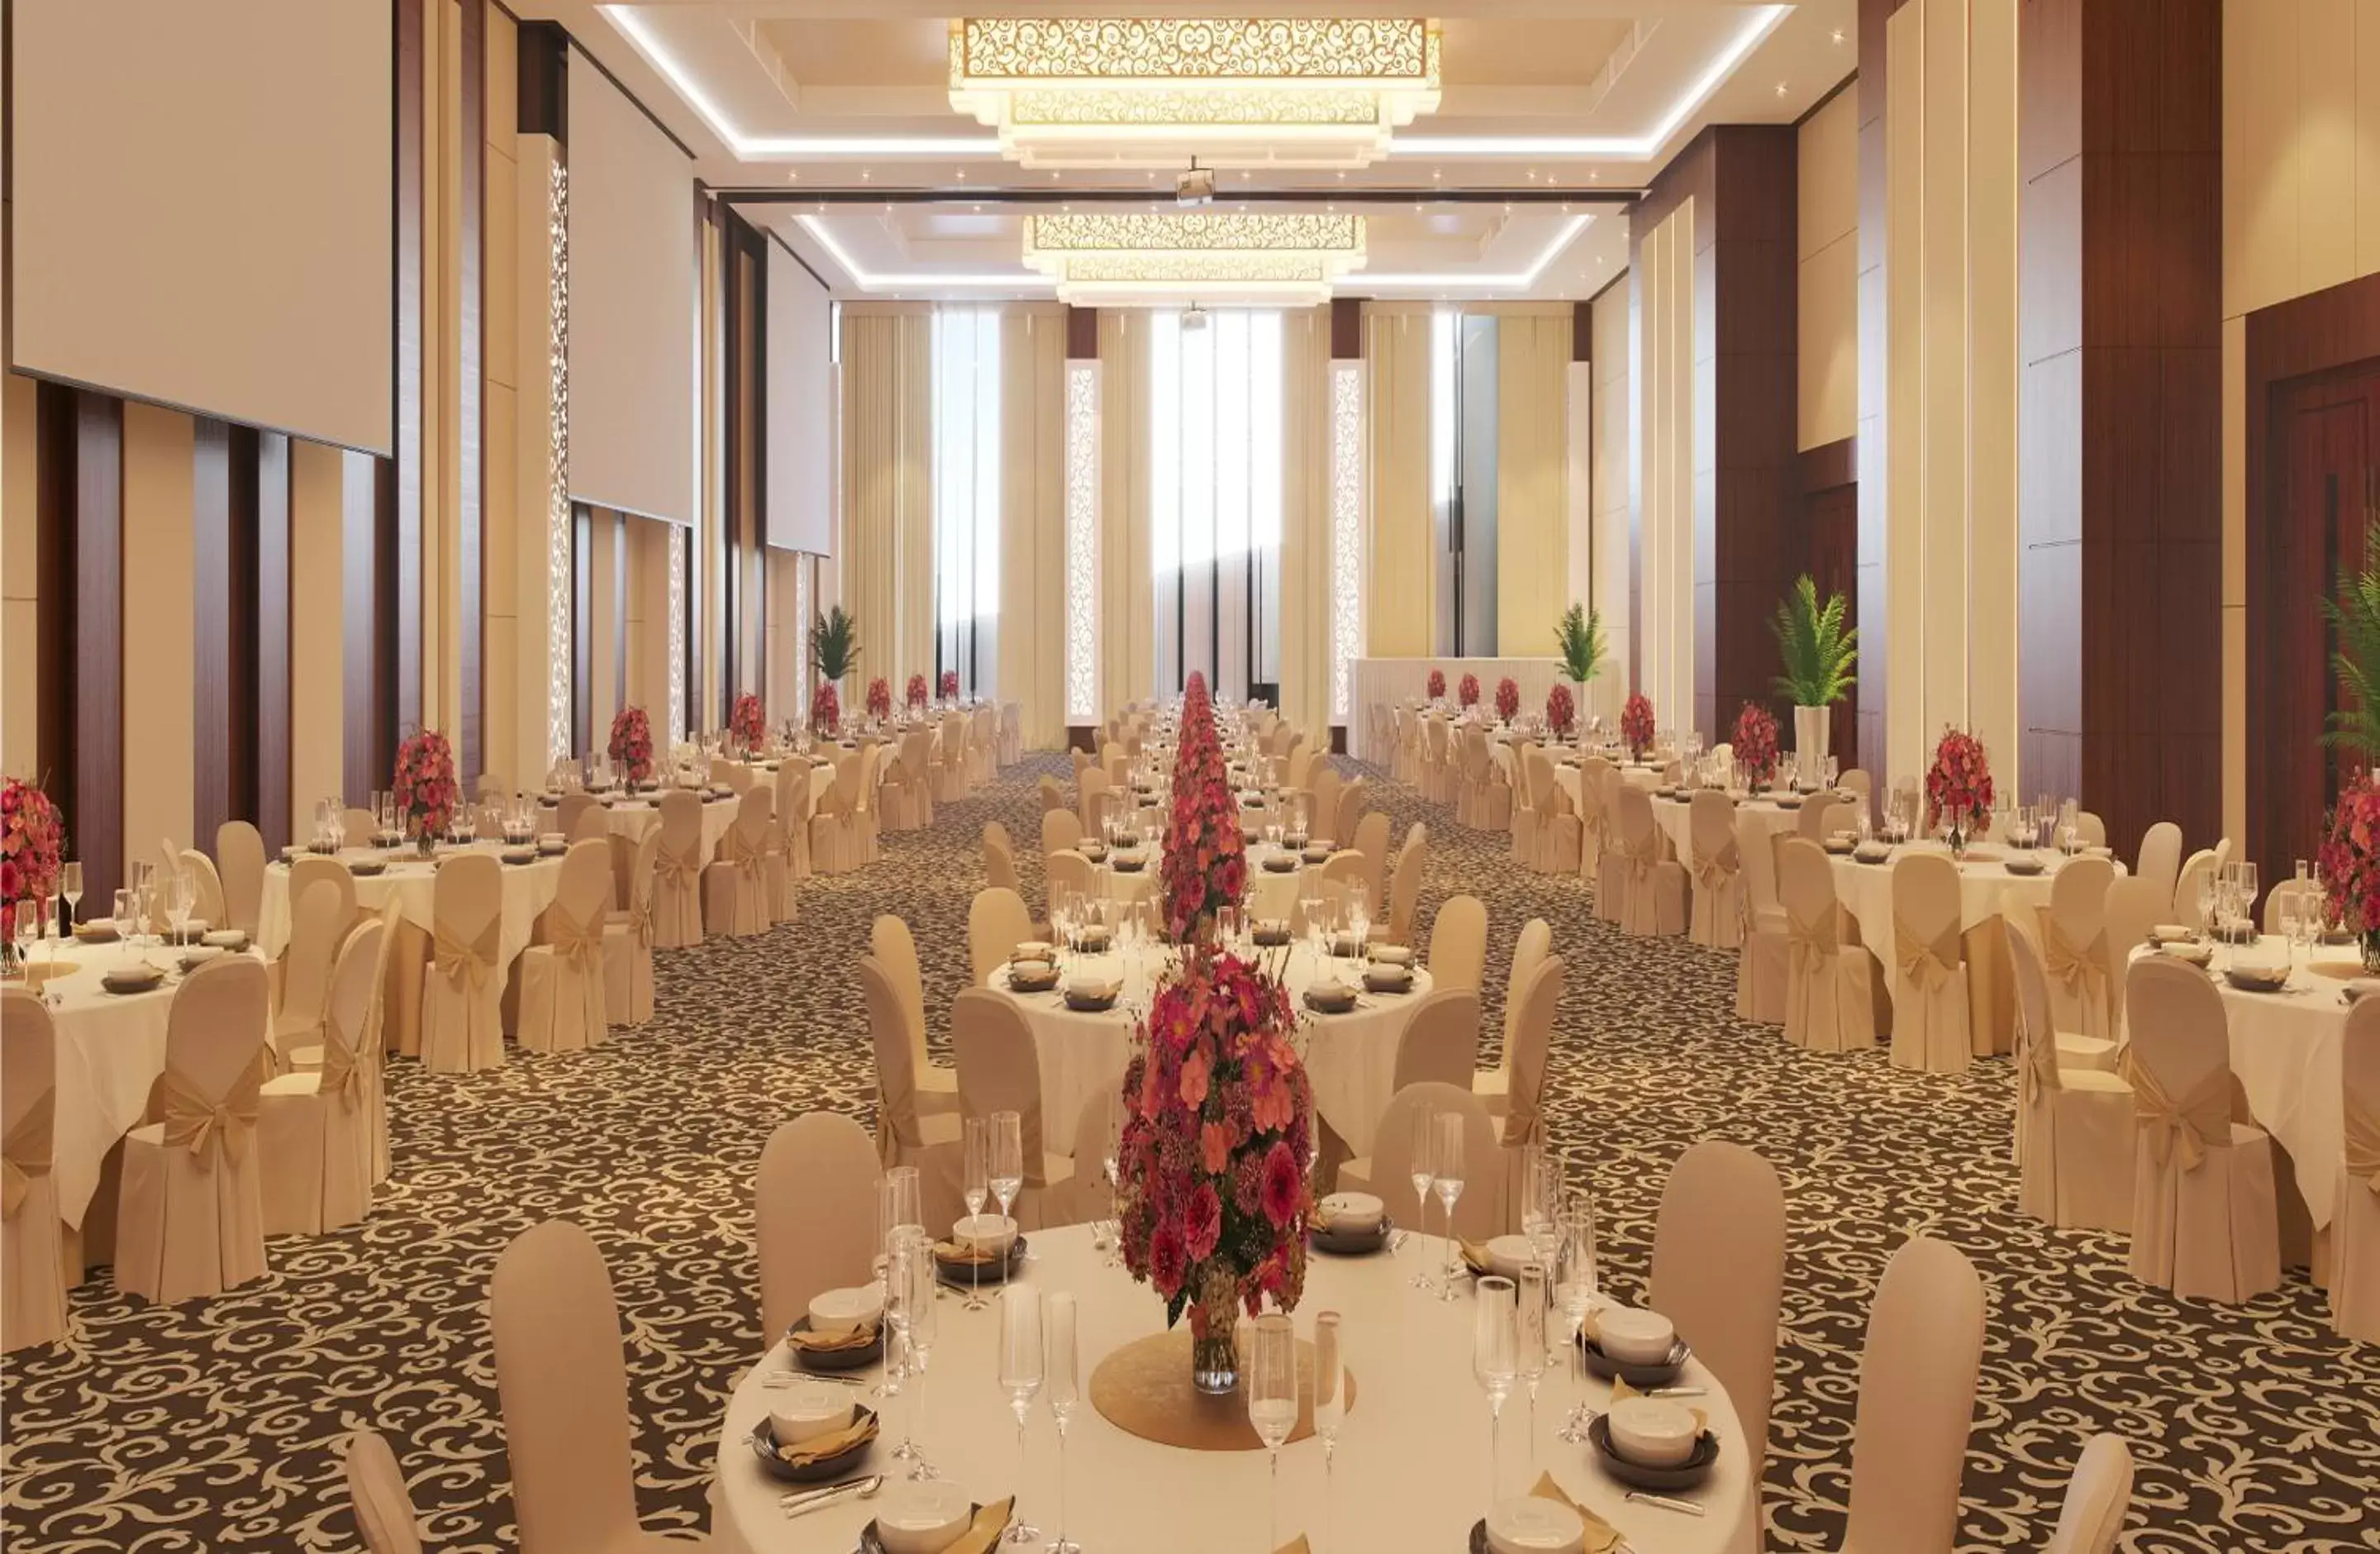 Banquet/Function facilities, Banquet Facilities in Atria Hotel Gading Serpong